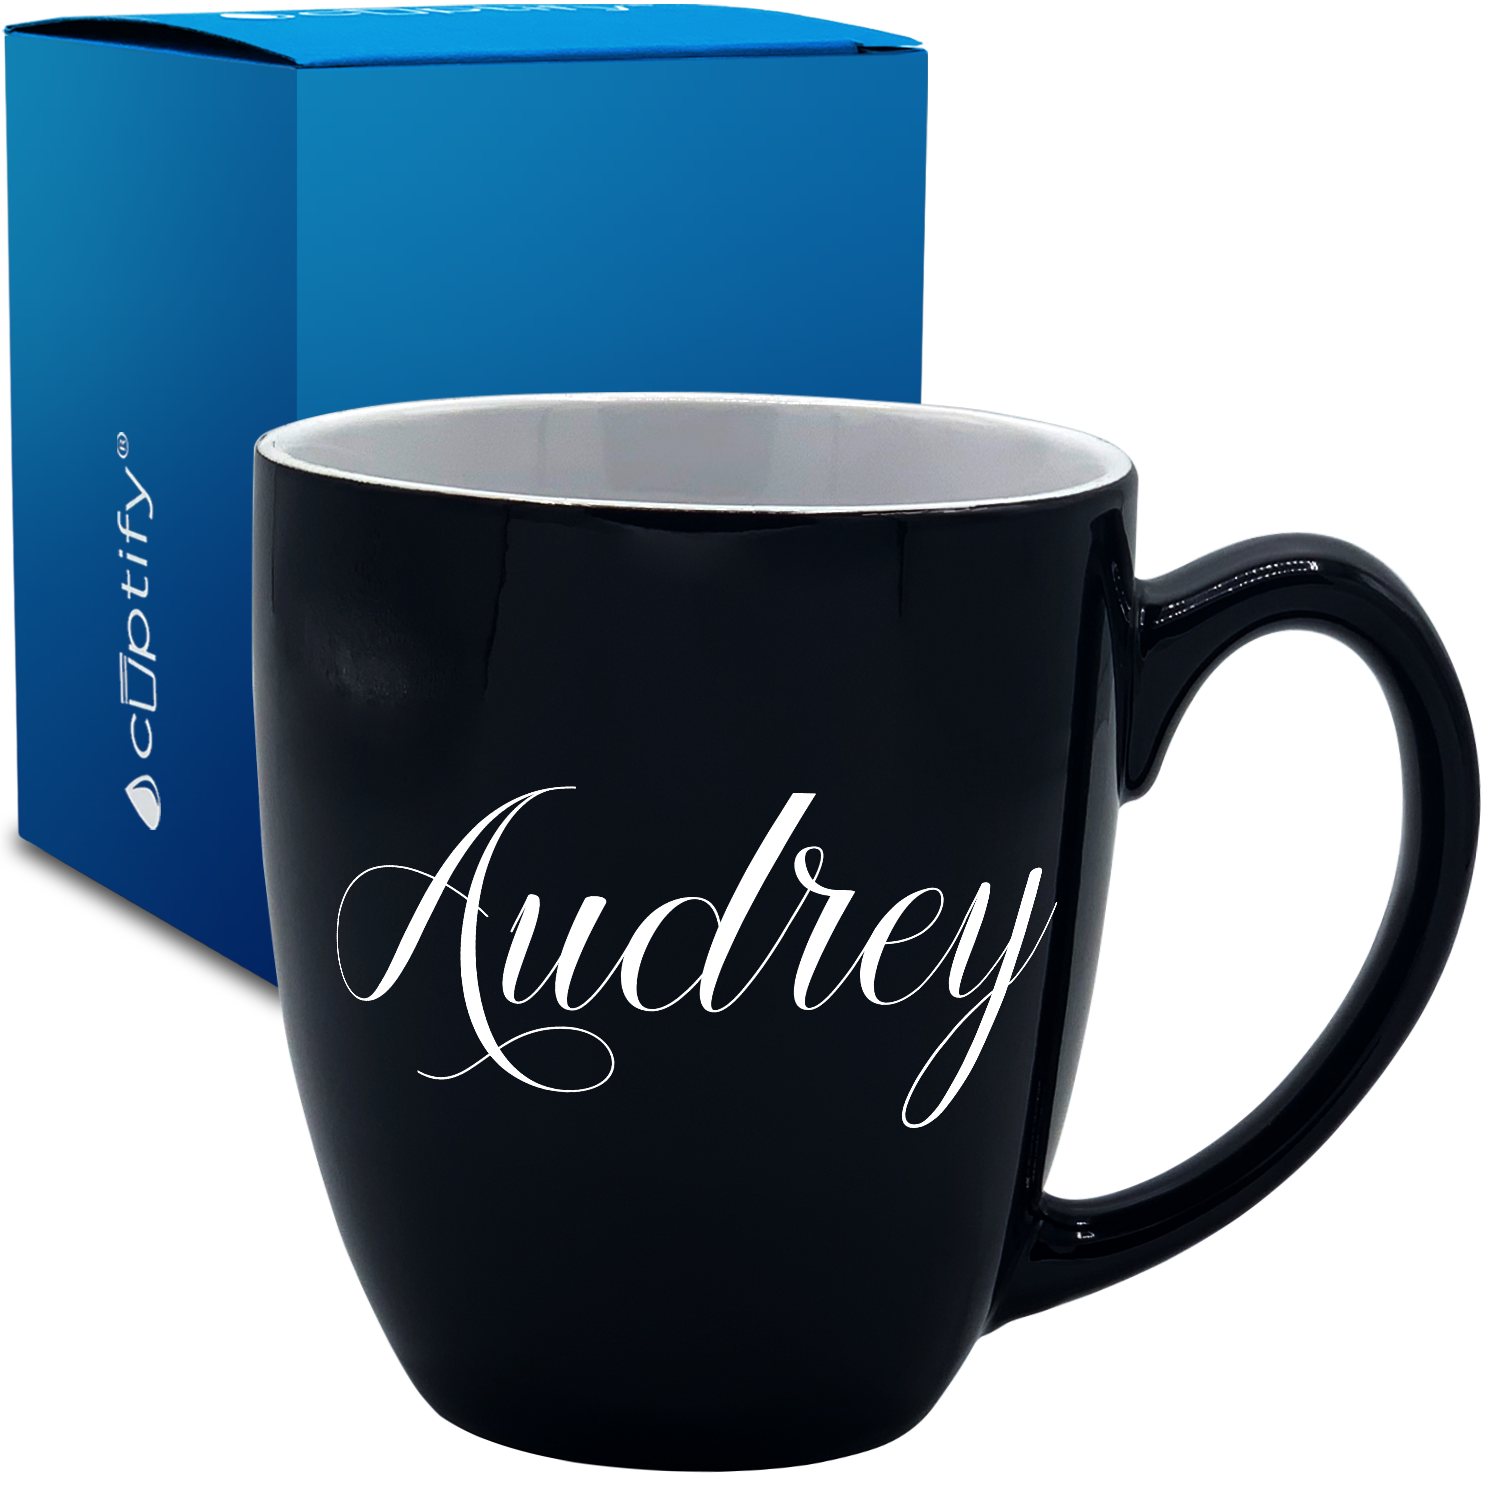 Personalized Audrey Style 16oz Bistro Coffee Mug